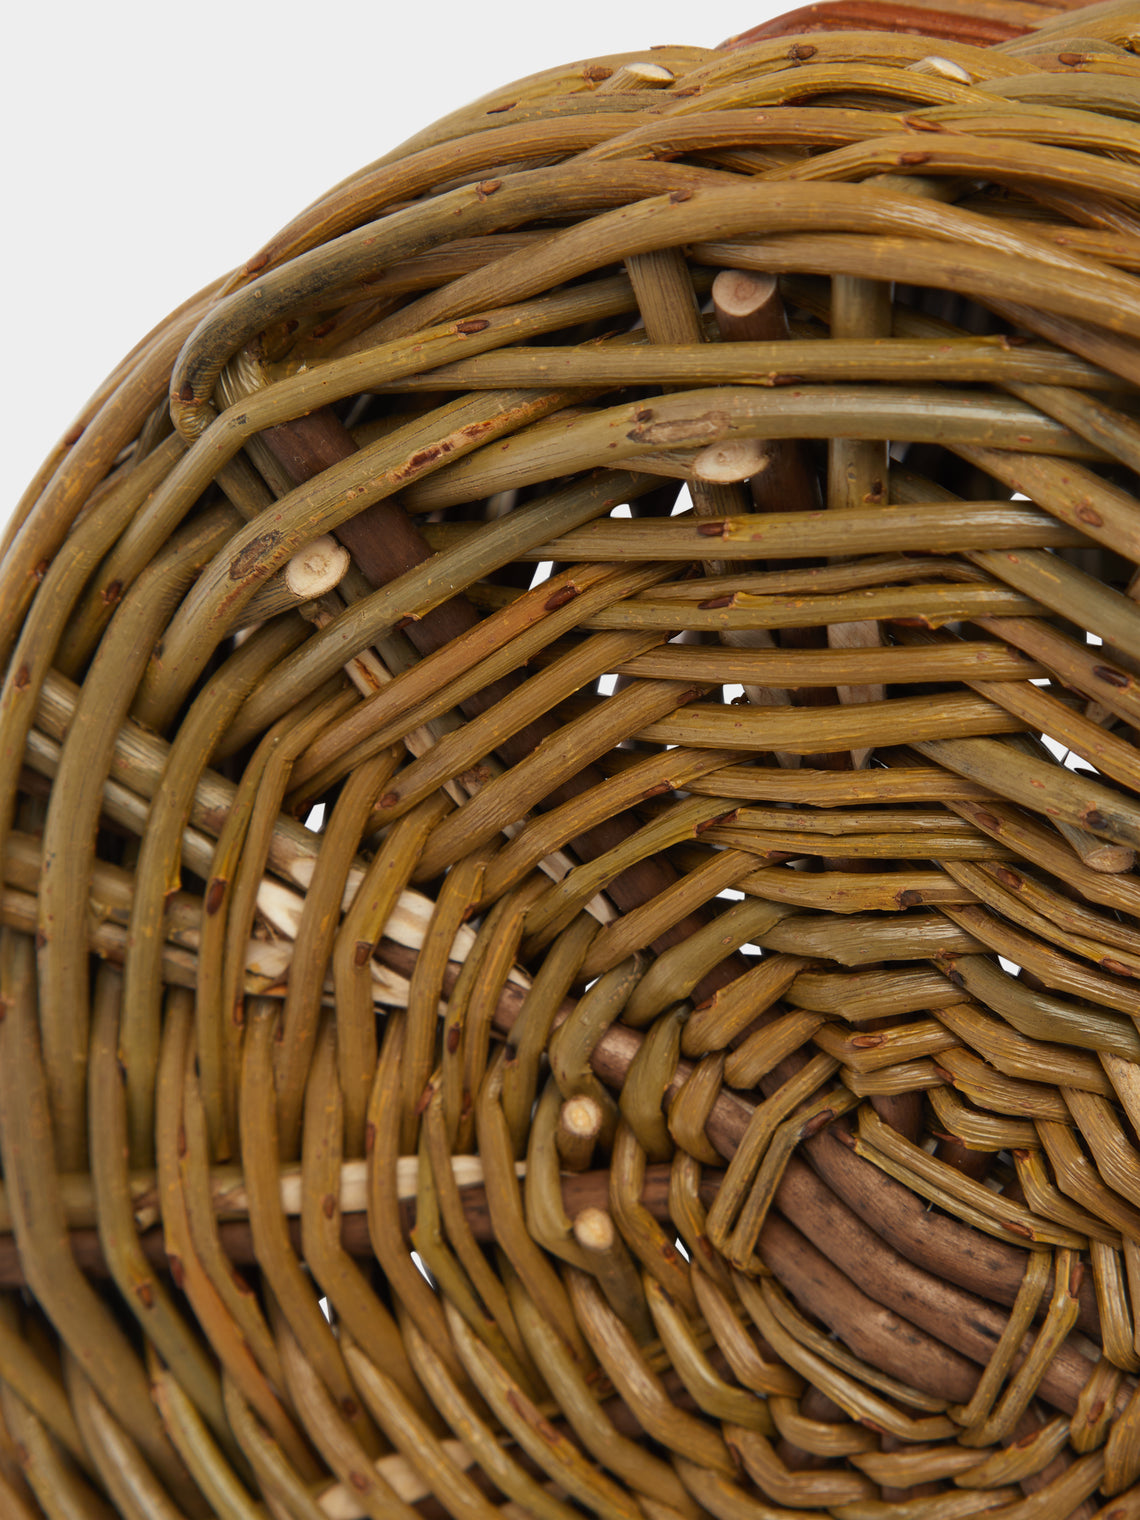 Rachel Bower - Handwoven Willow Asymmetric Utensils Basket -  - ABASK